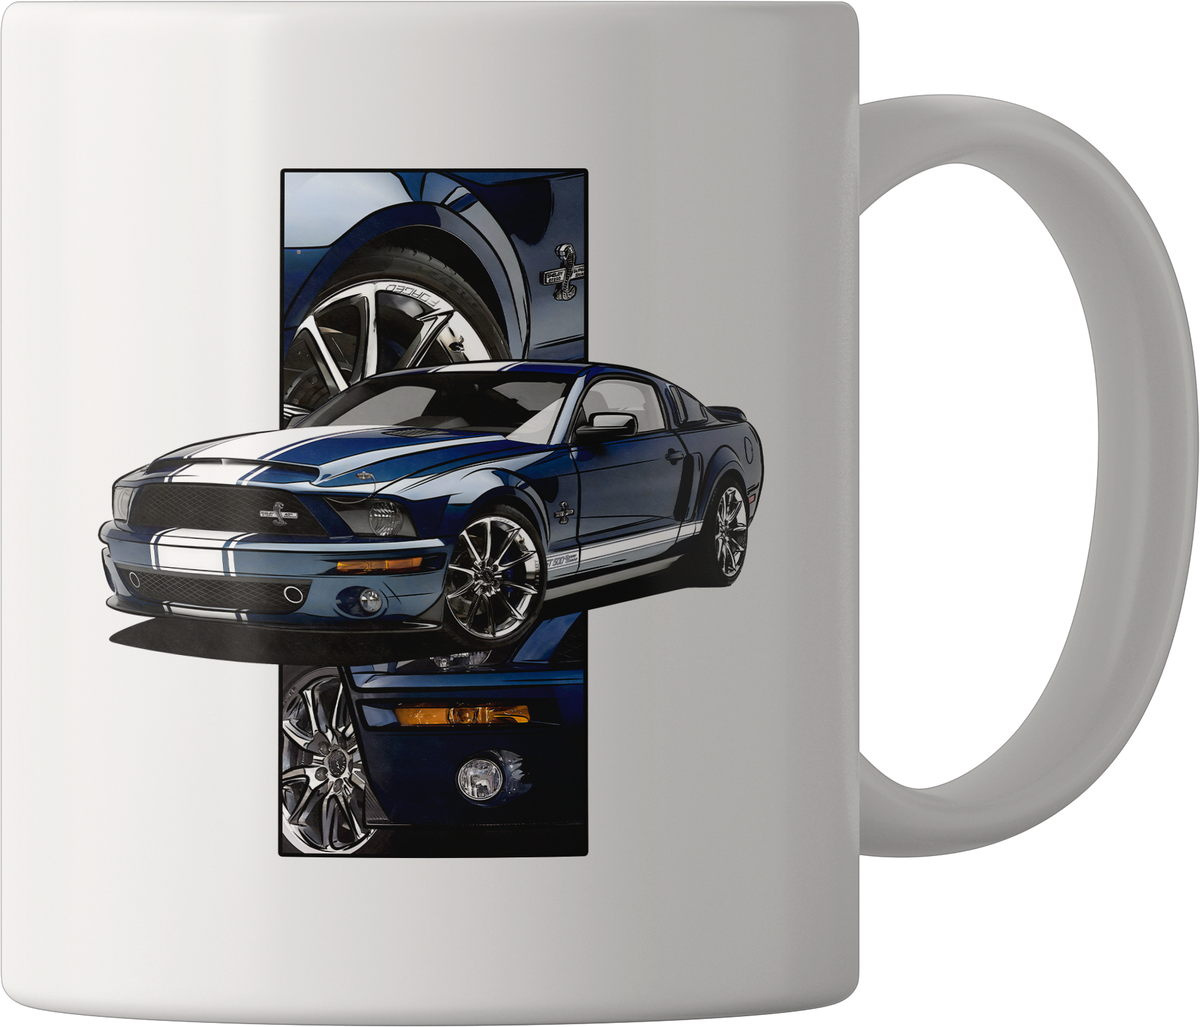 Nome do produto: Mustang GT500